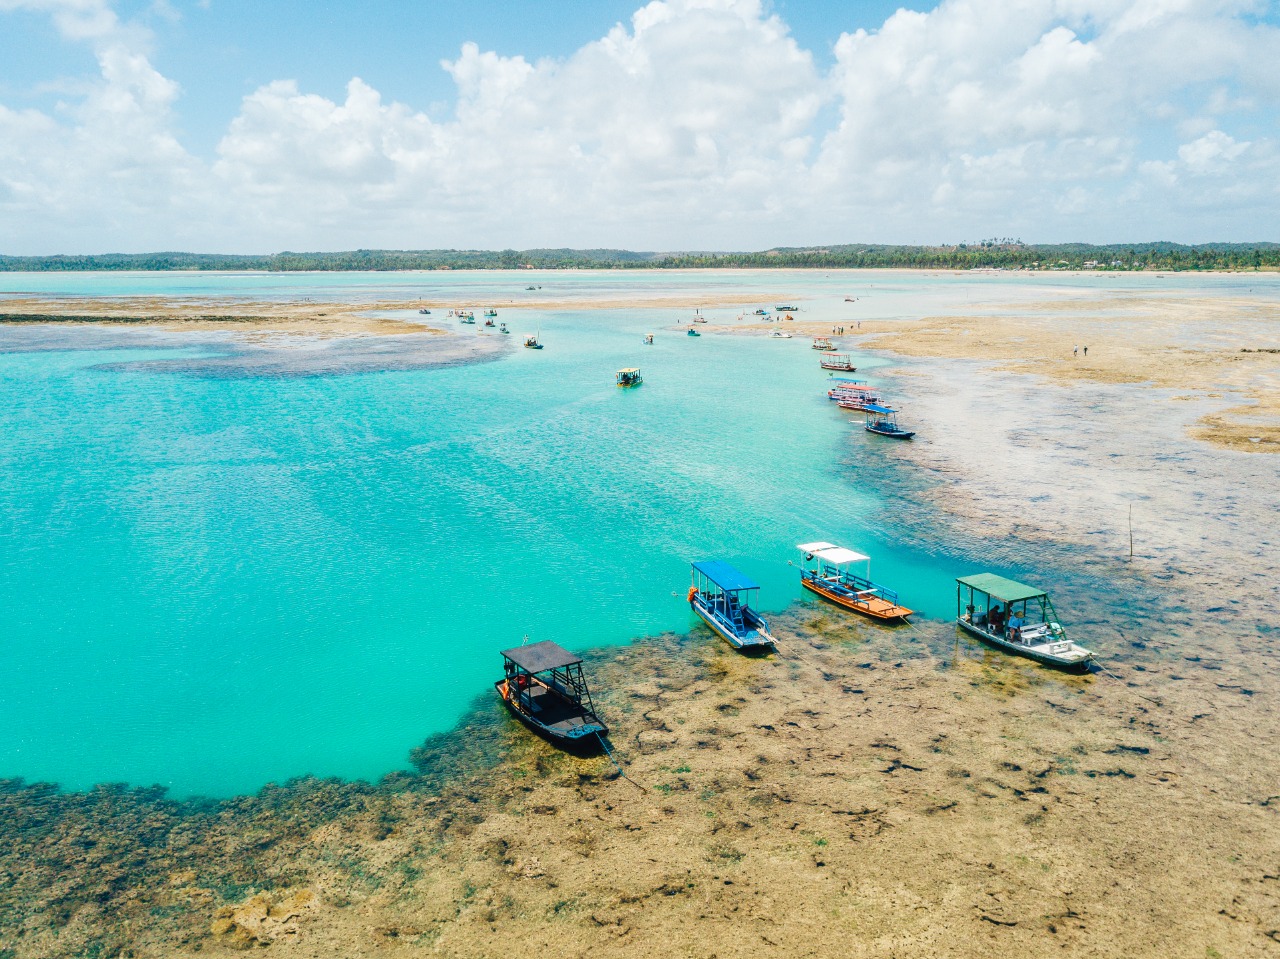 Praia do Patacho recebe selo Bandeira Azul pelo segundo ano consecutivo